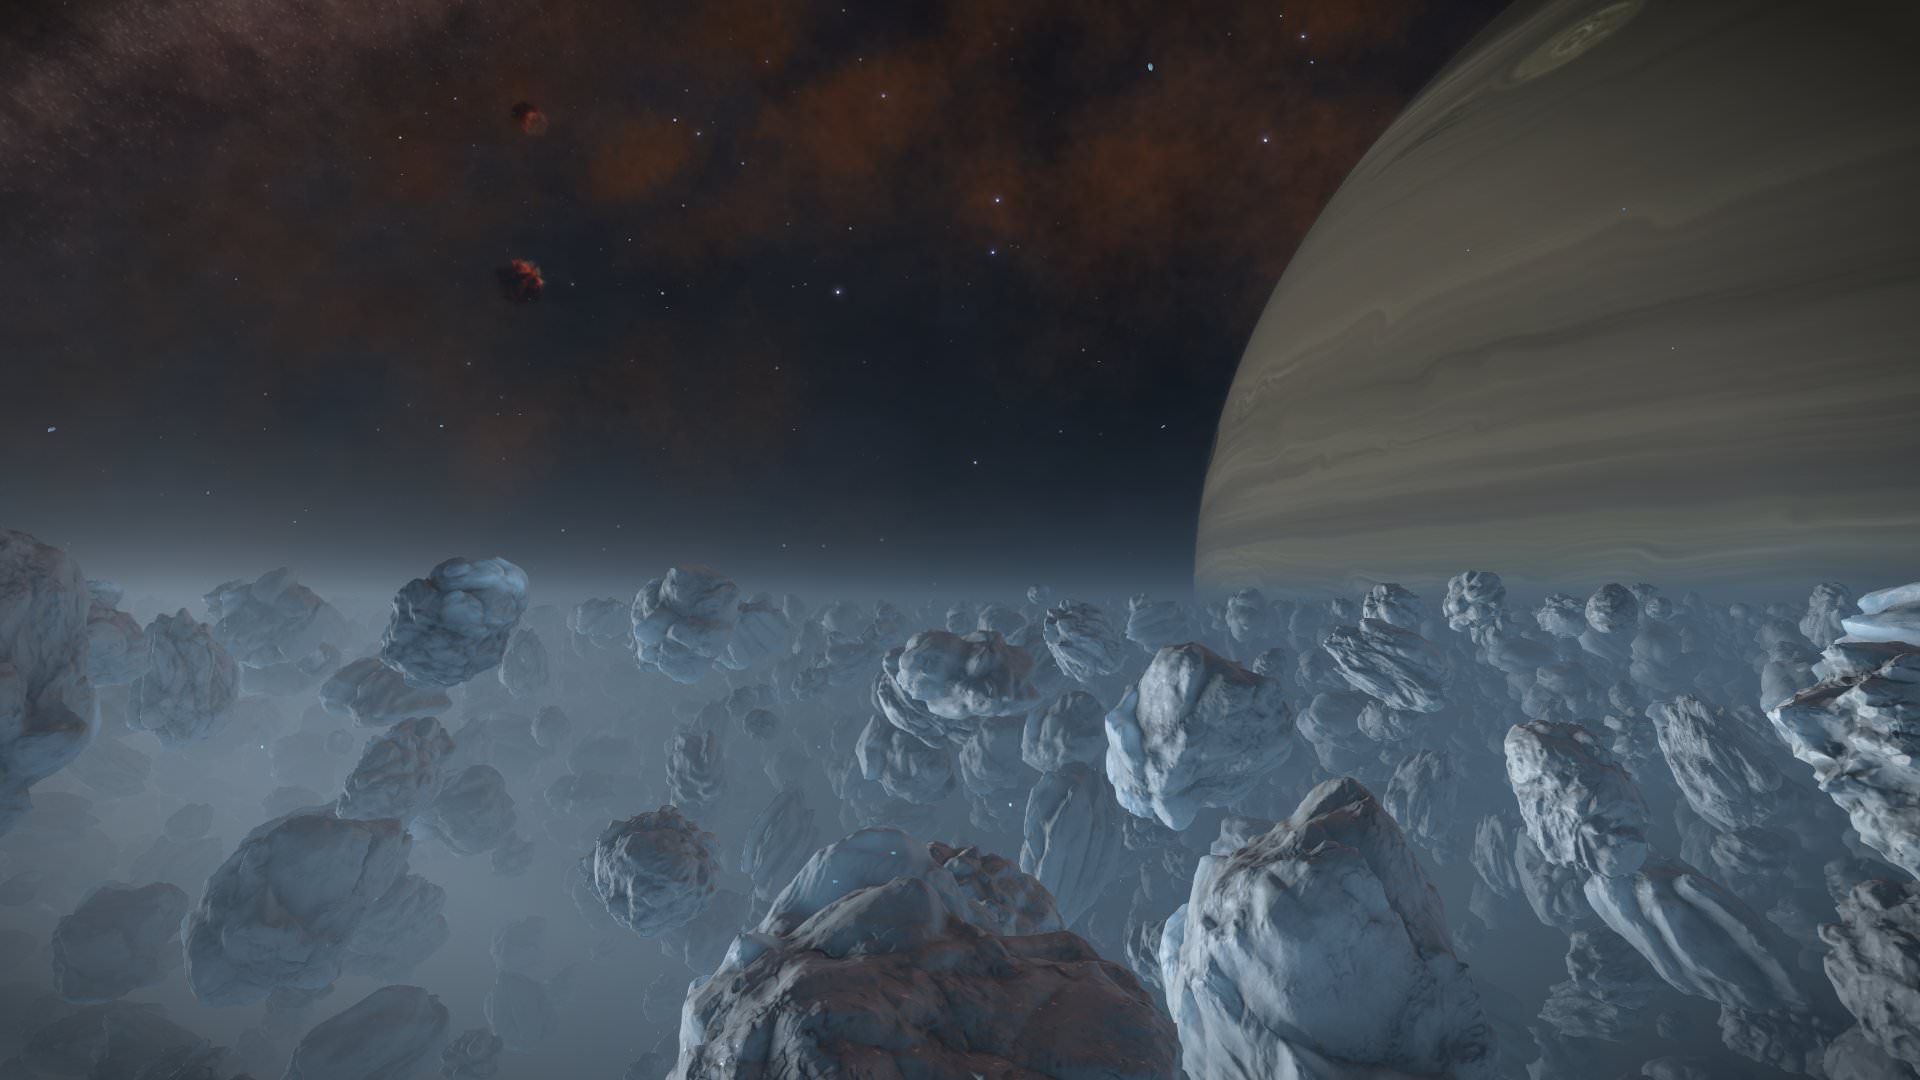 Painting nebula with planet timelapse photoshop